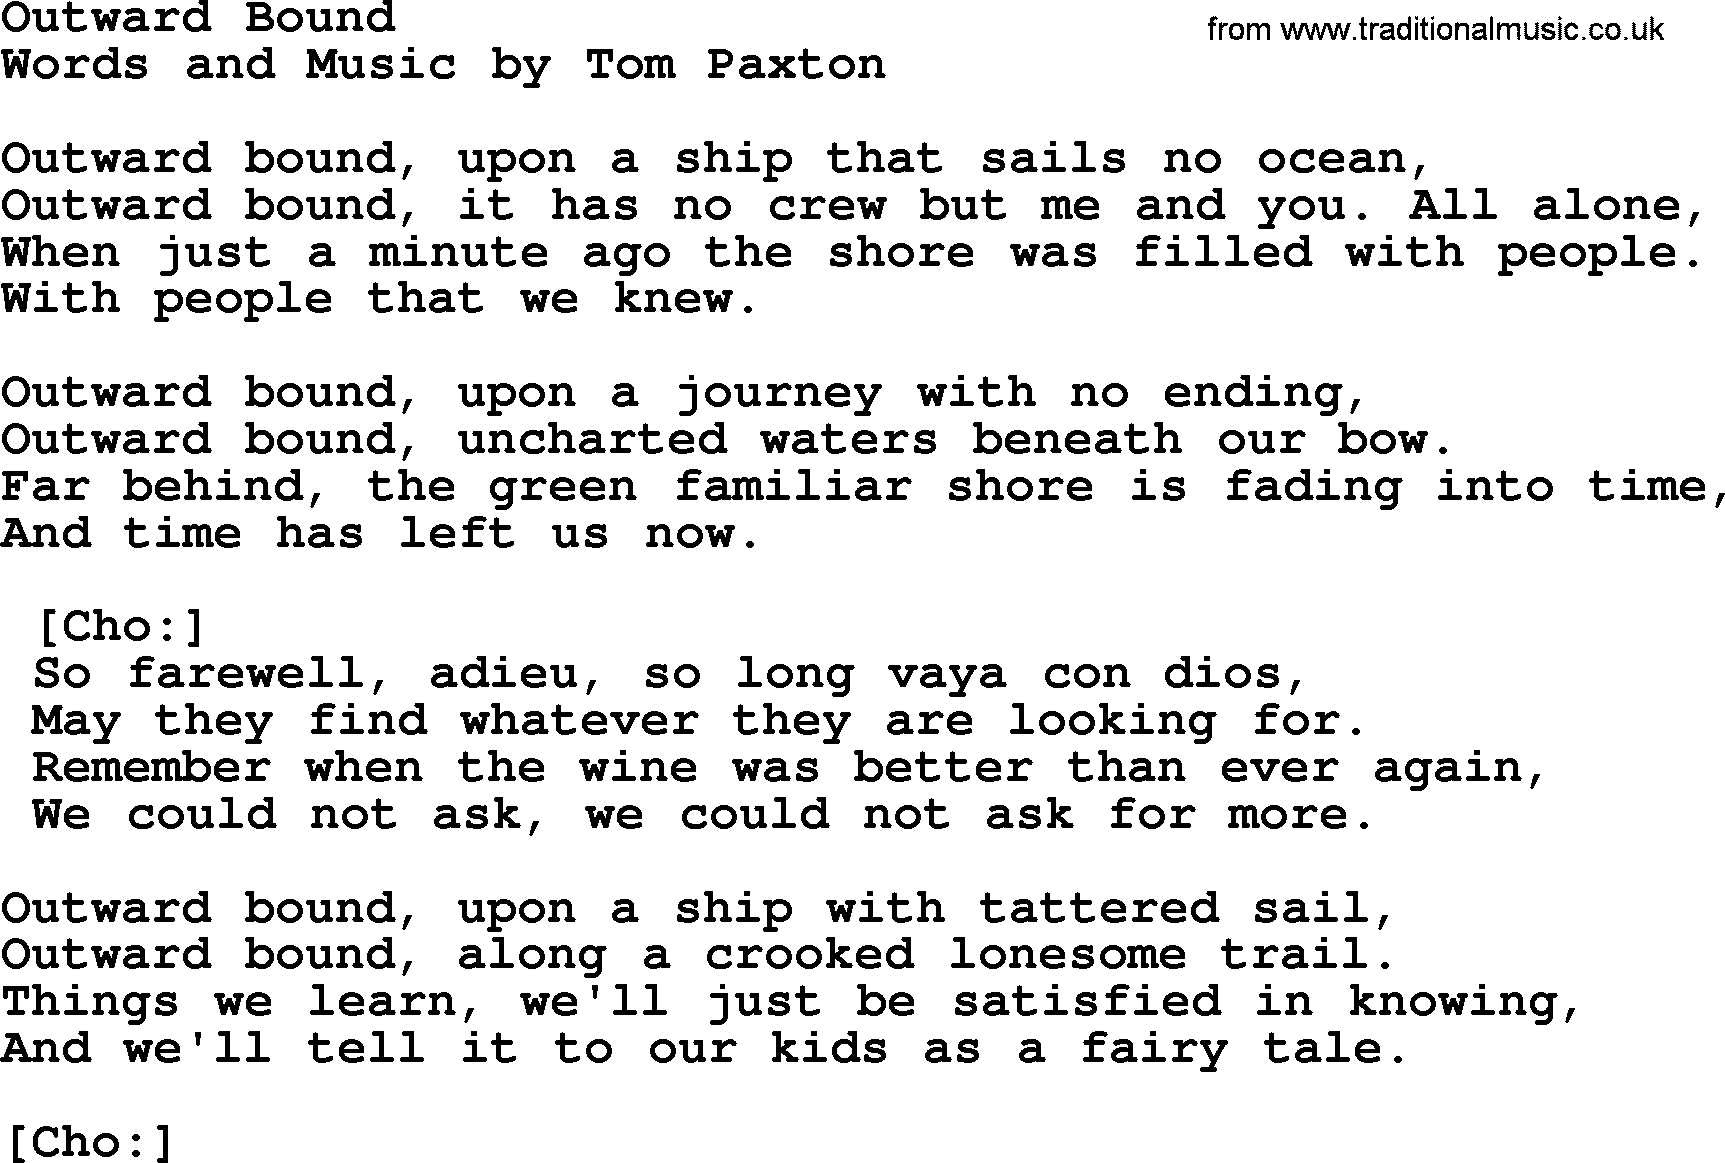 Tom Paxton song: Outward Bound, lyrics